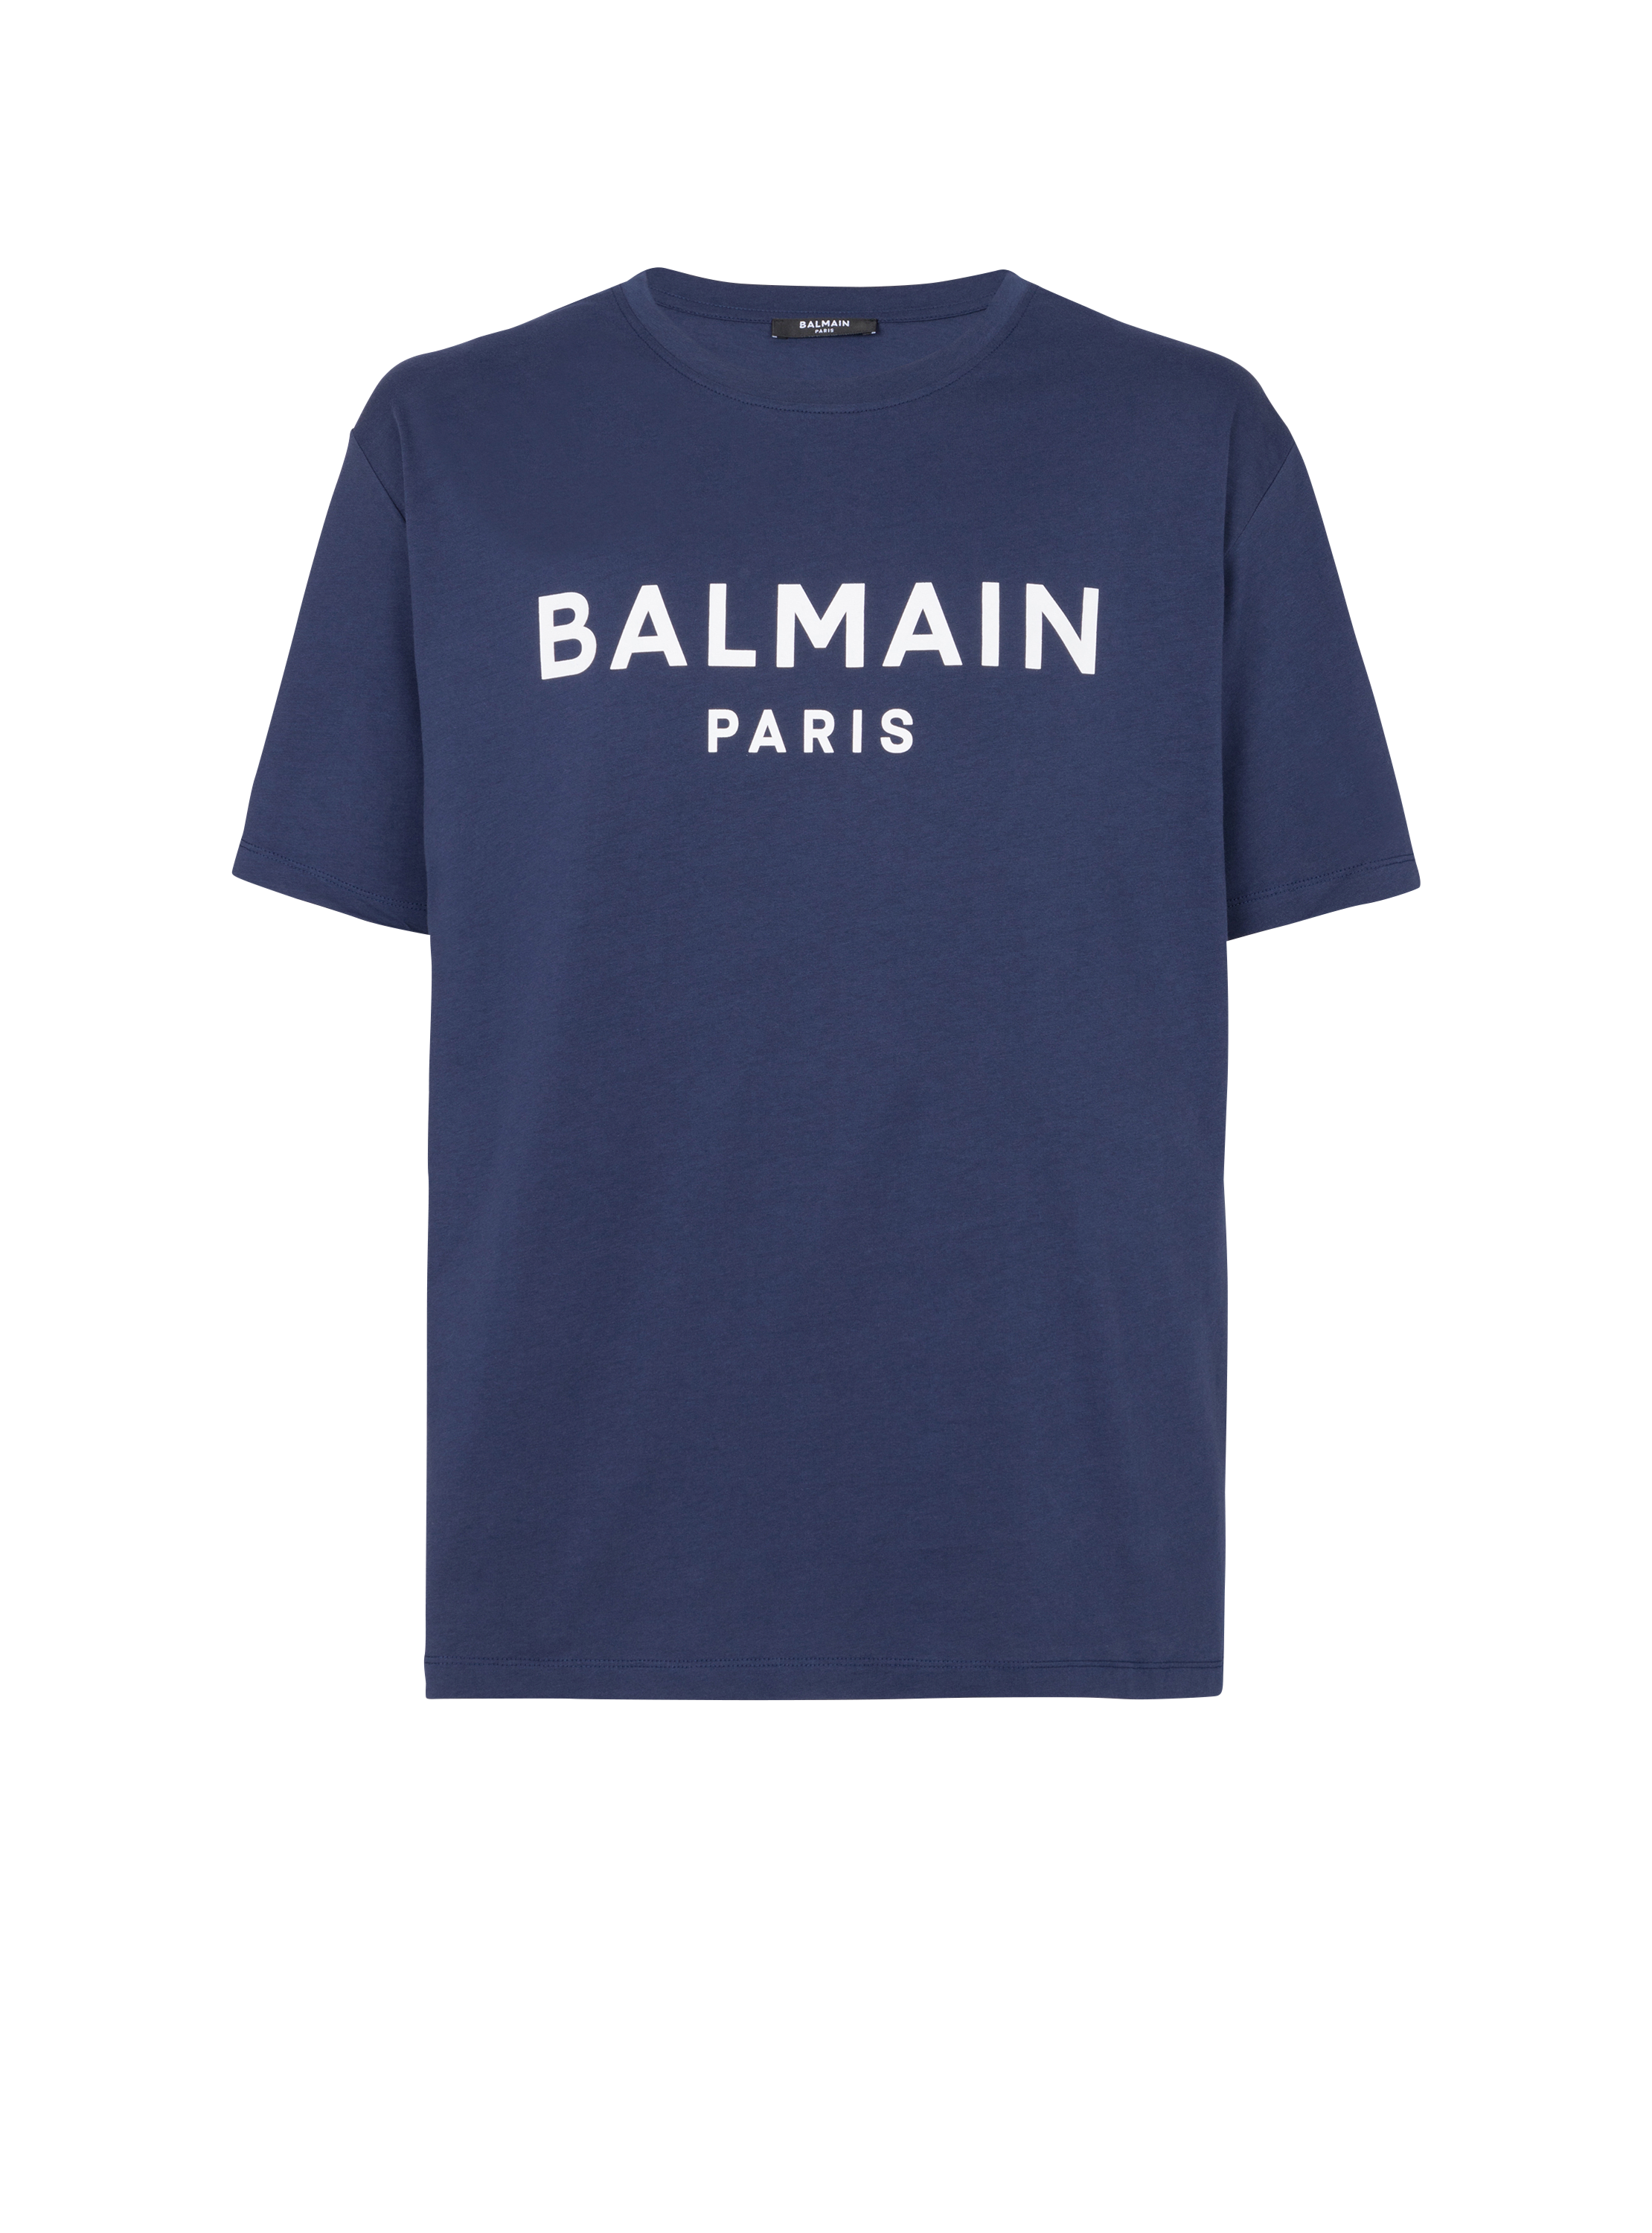 Balmain Paris T-shirt, navy, hi-res